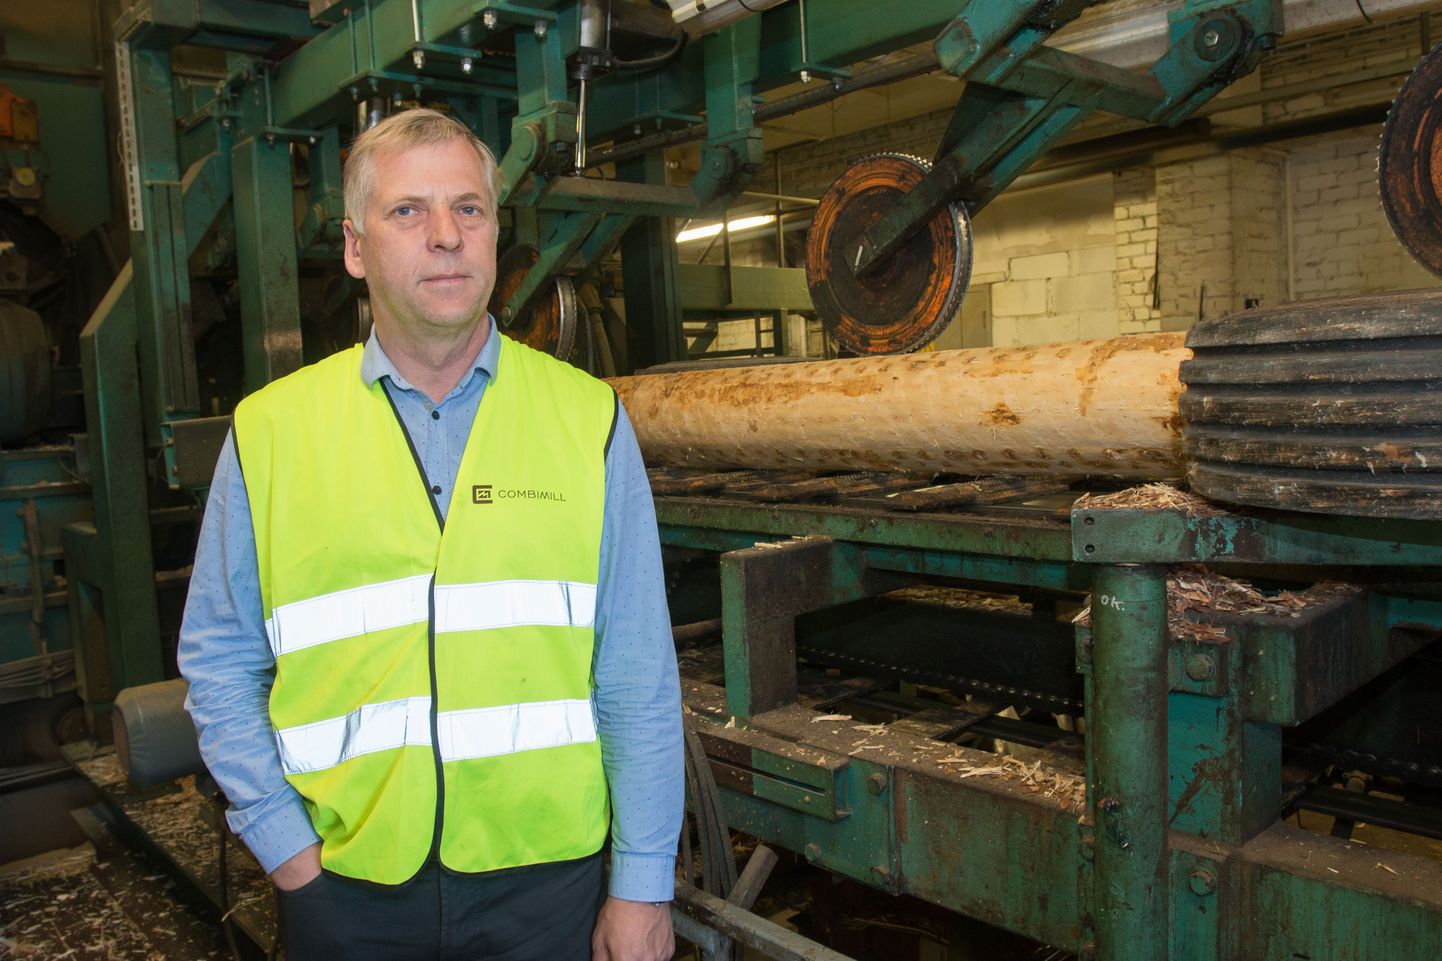 Metsatööstussektori ekspert Margus Kohava kinnitas Valgamaalasele, et kuna ollakse alles protsessi alguses, ei ole tehasele asukohta veel valitud.